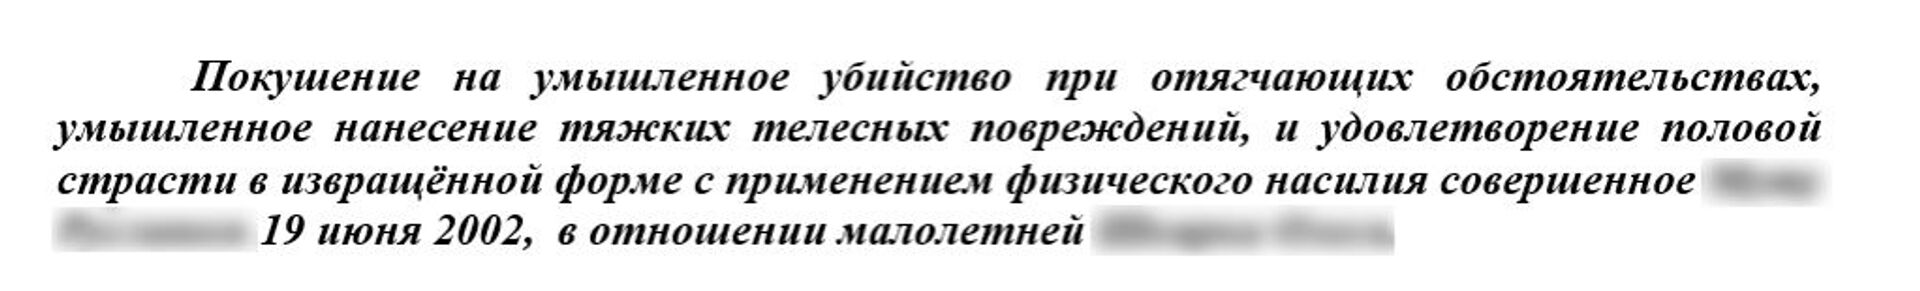 Как в Кишиневе орудовал серийный педофил: шокирующие детали следствия – фото - Sputnik Молдова, 1920, 21.03.2021